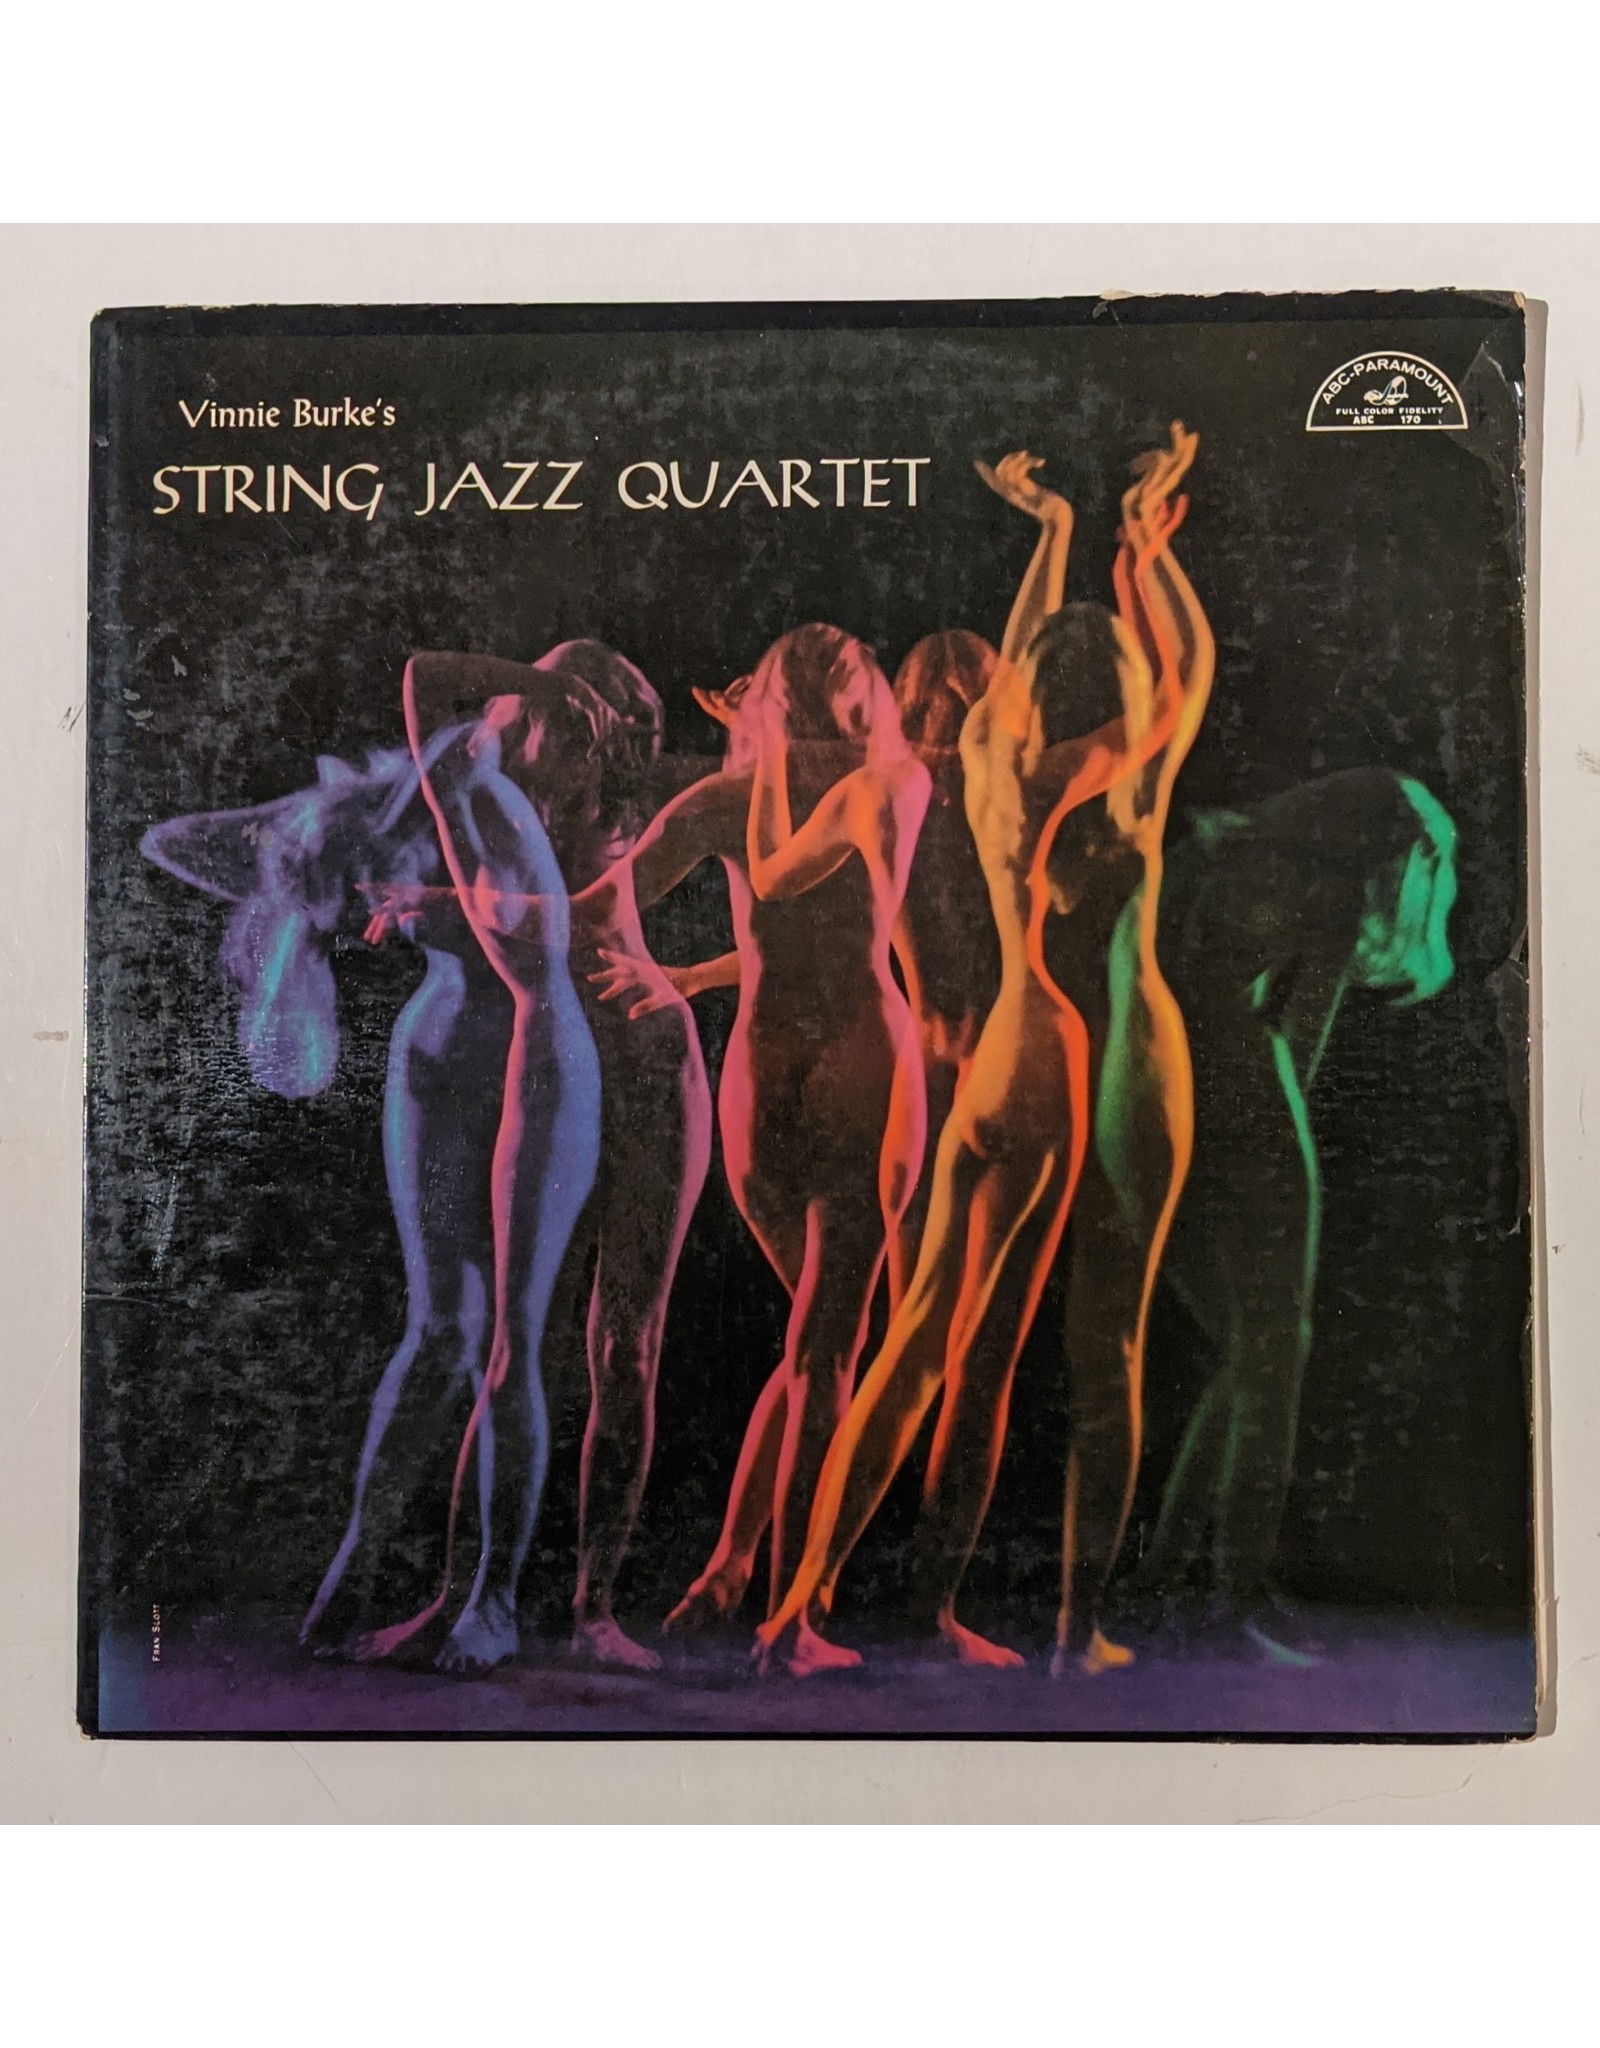 USED: Vinnie Burke's: String Jazz Quartet LP